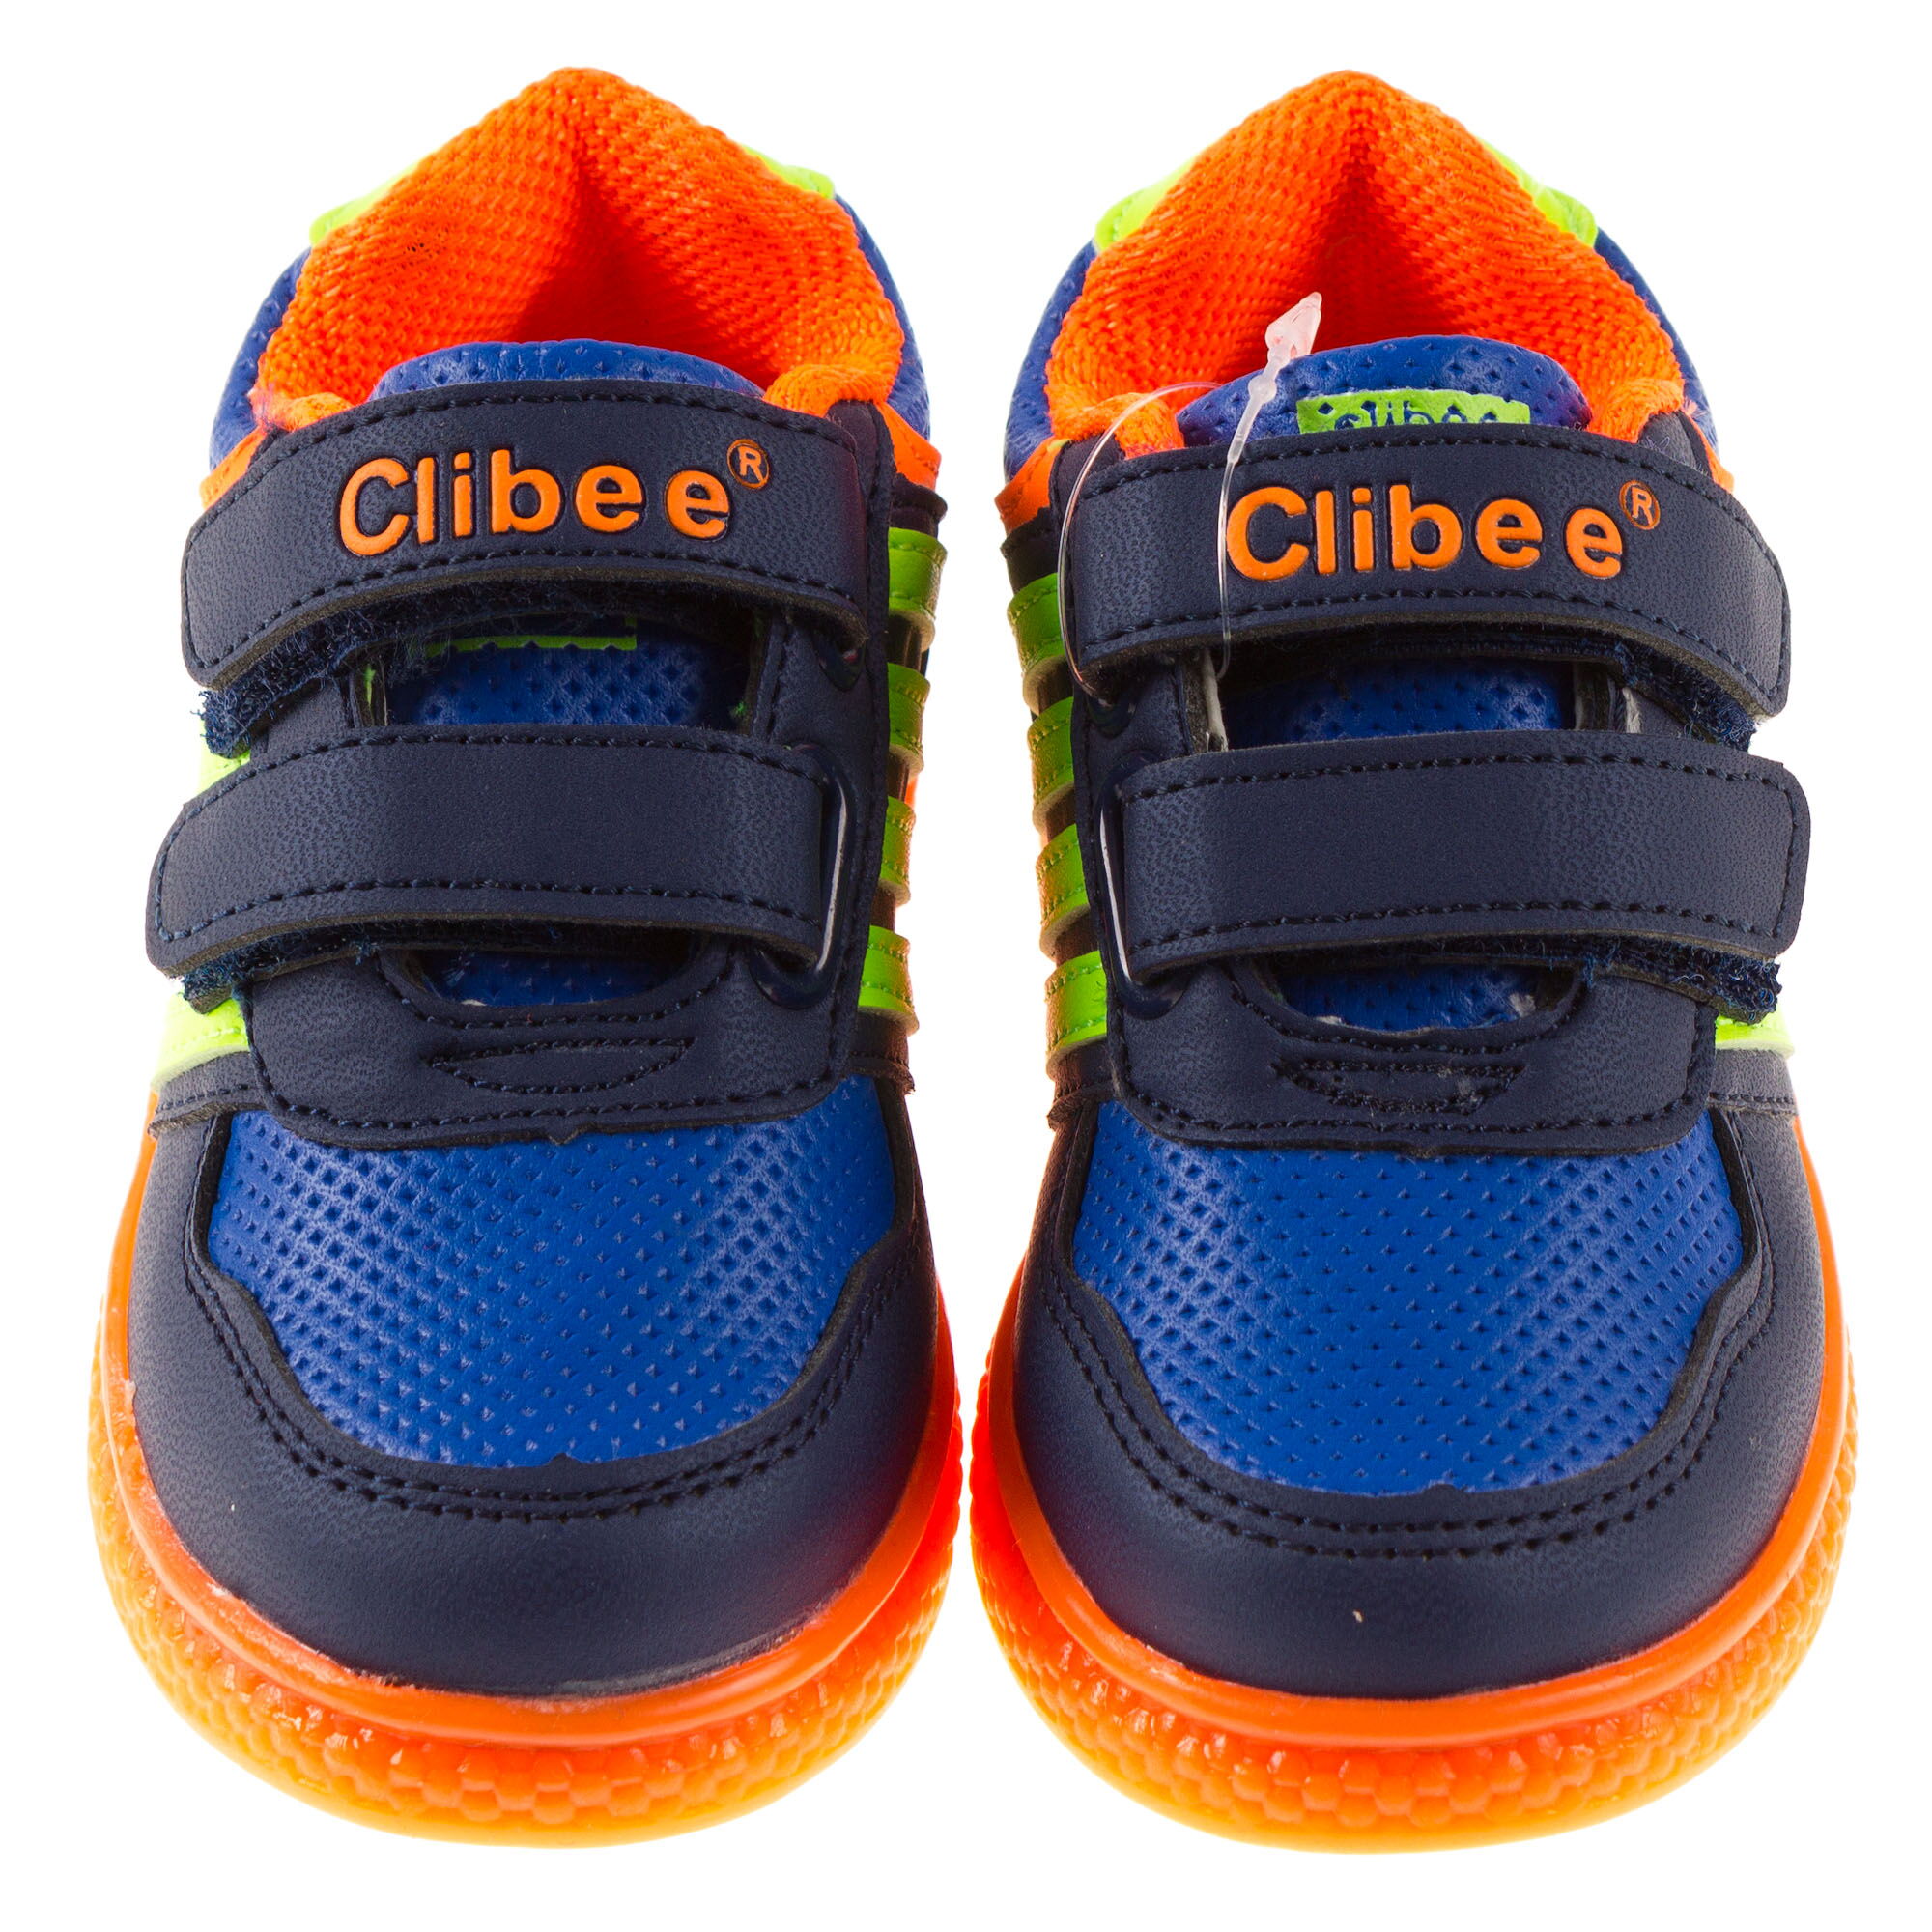 Кроссовки детские Clibee оранжевые F-670 - размеры